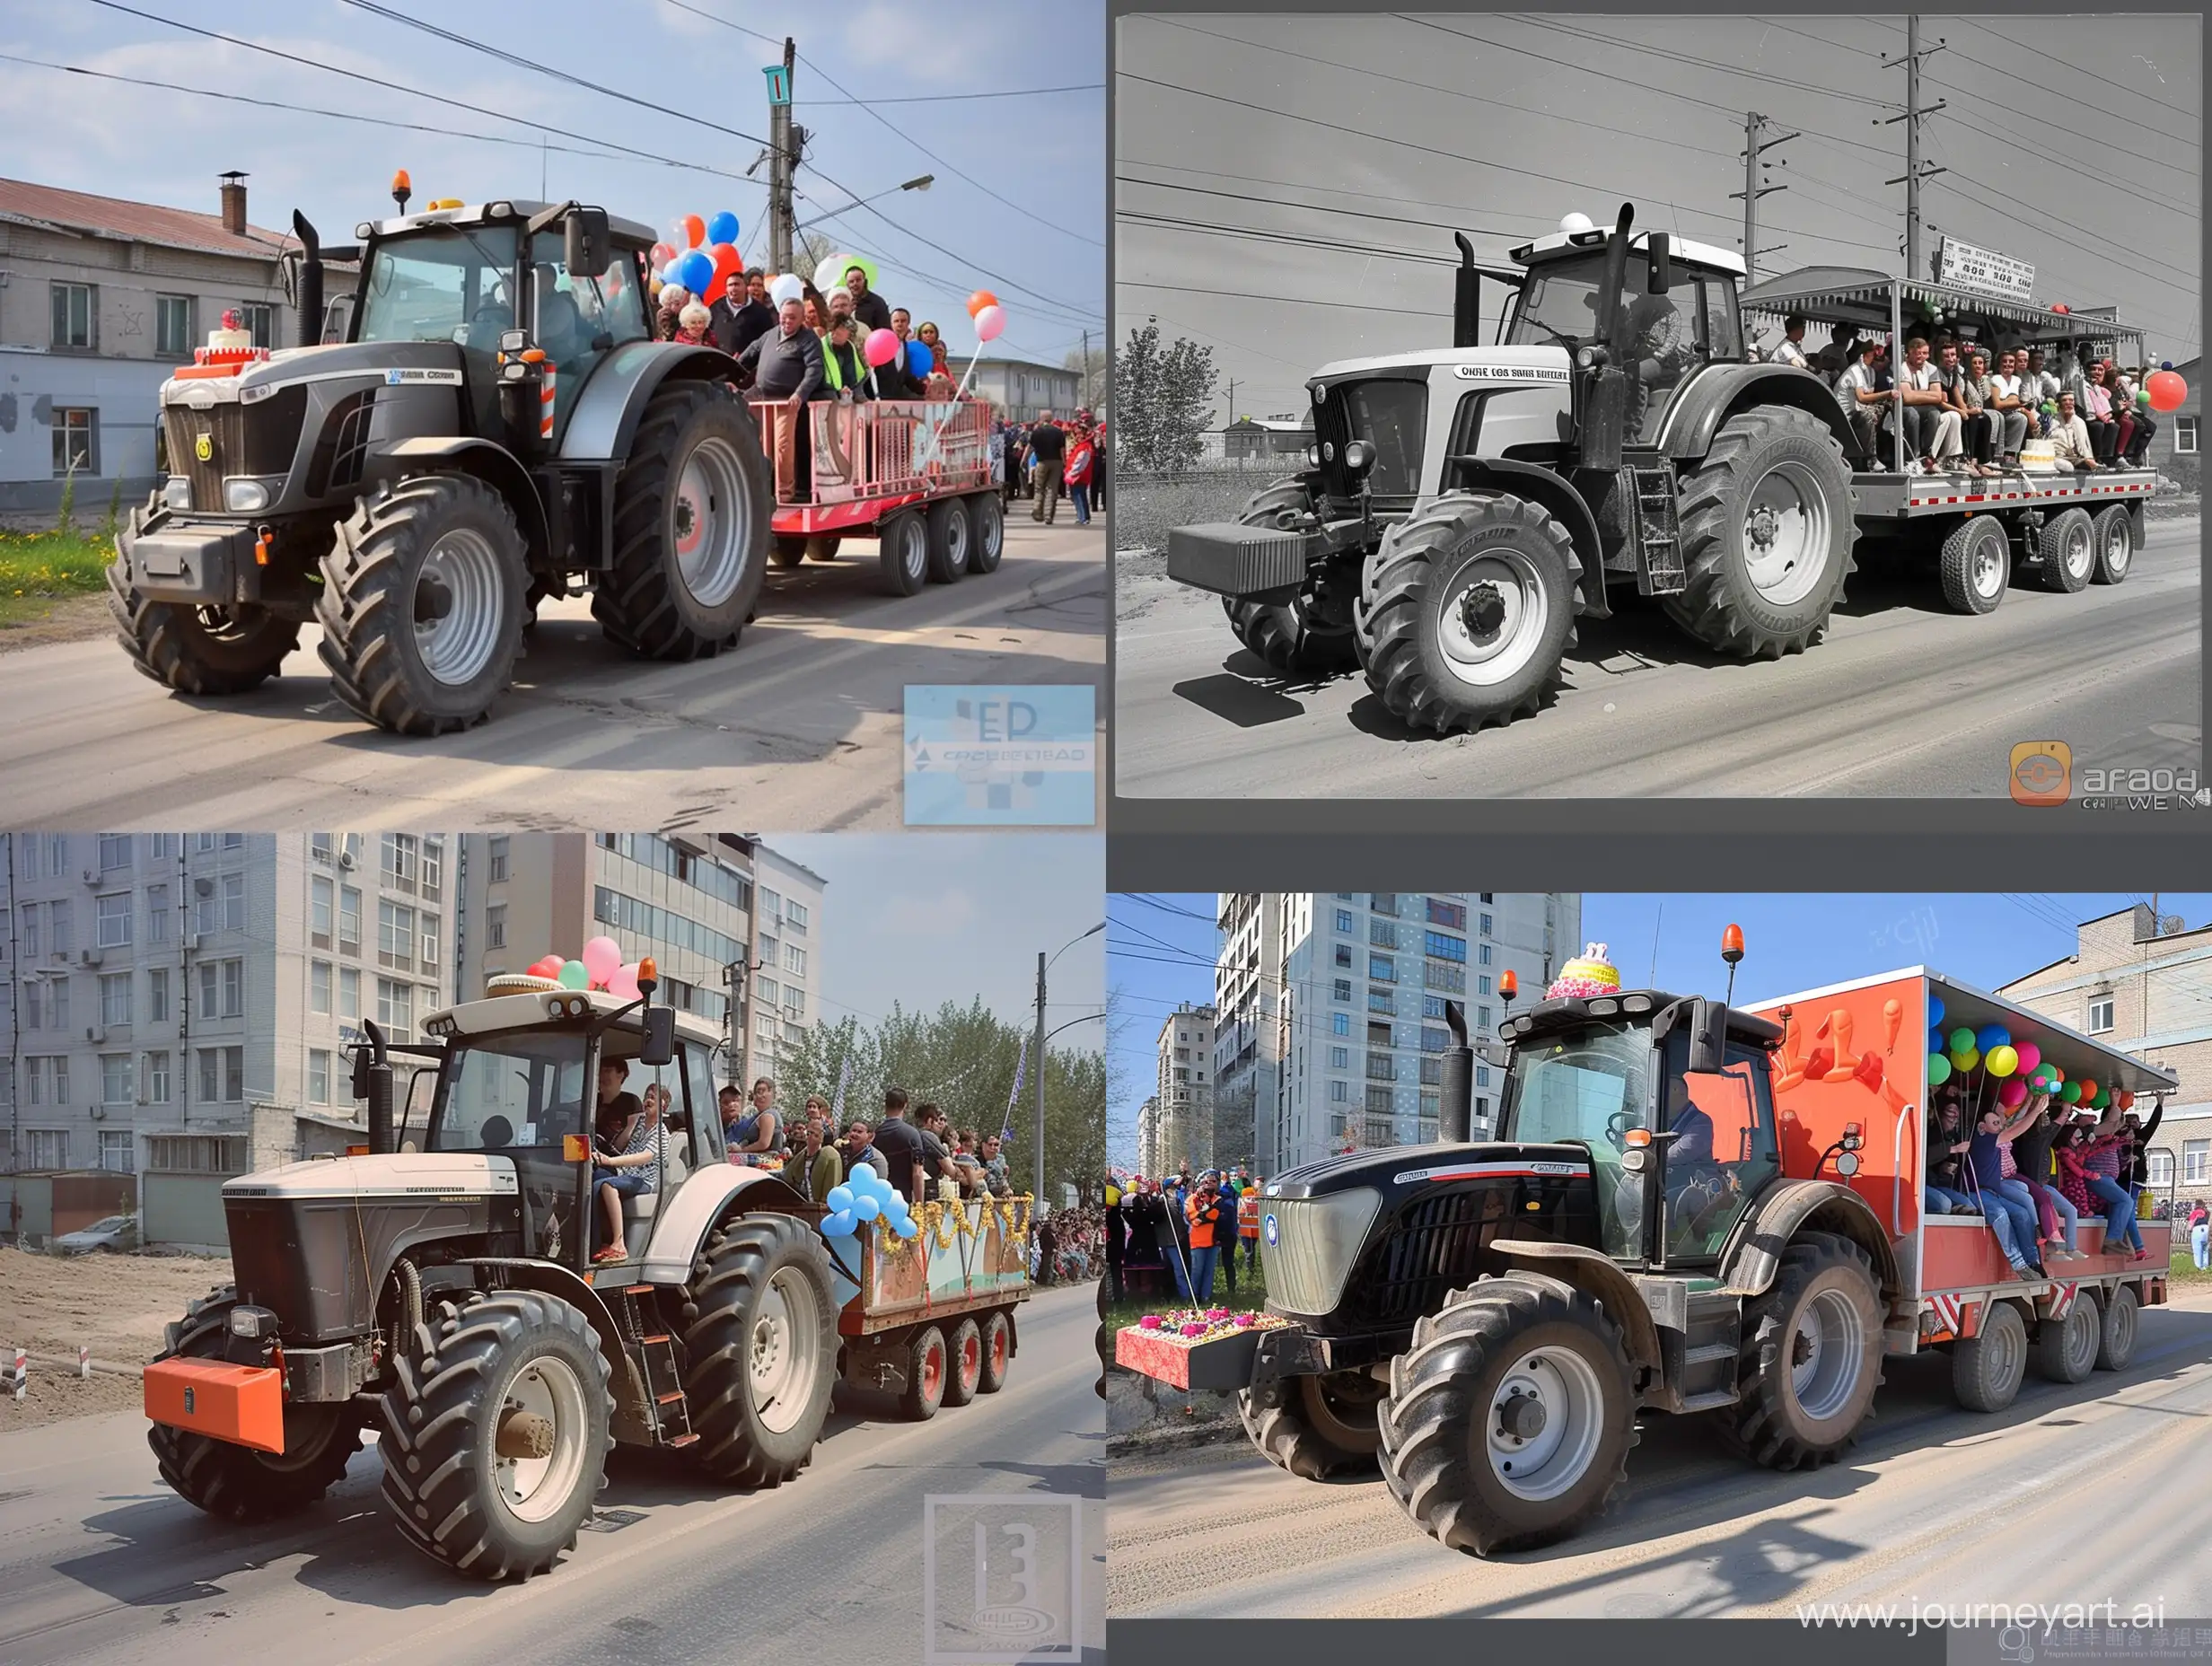 http://userdata.agroserver.ru/pic/333613/2288610.jpg трактор с картинки везет в прицепе людей по городу, люди при параде отмечают в прицепе день рождение компании с тортом и шарами
